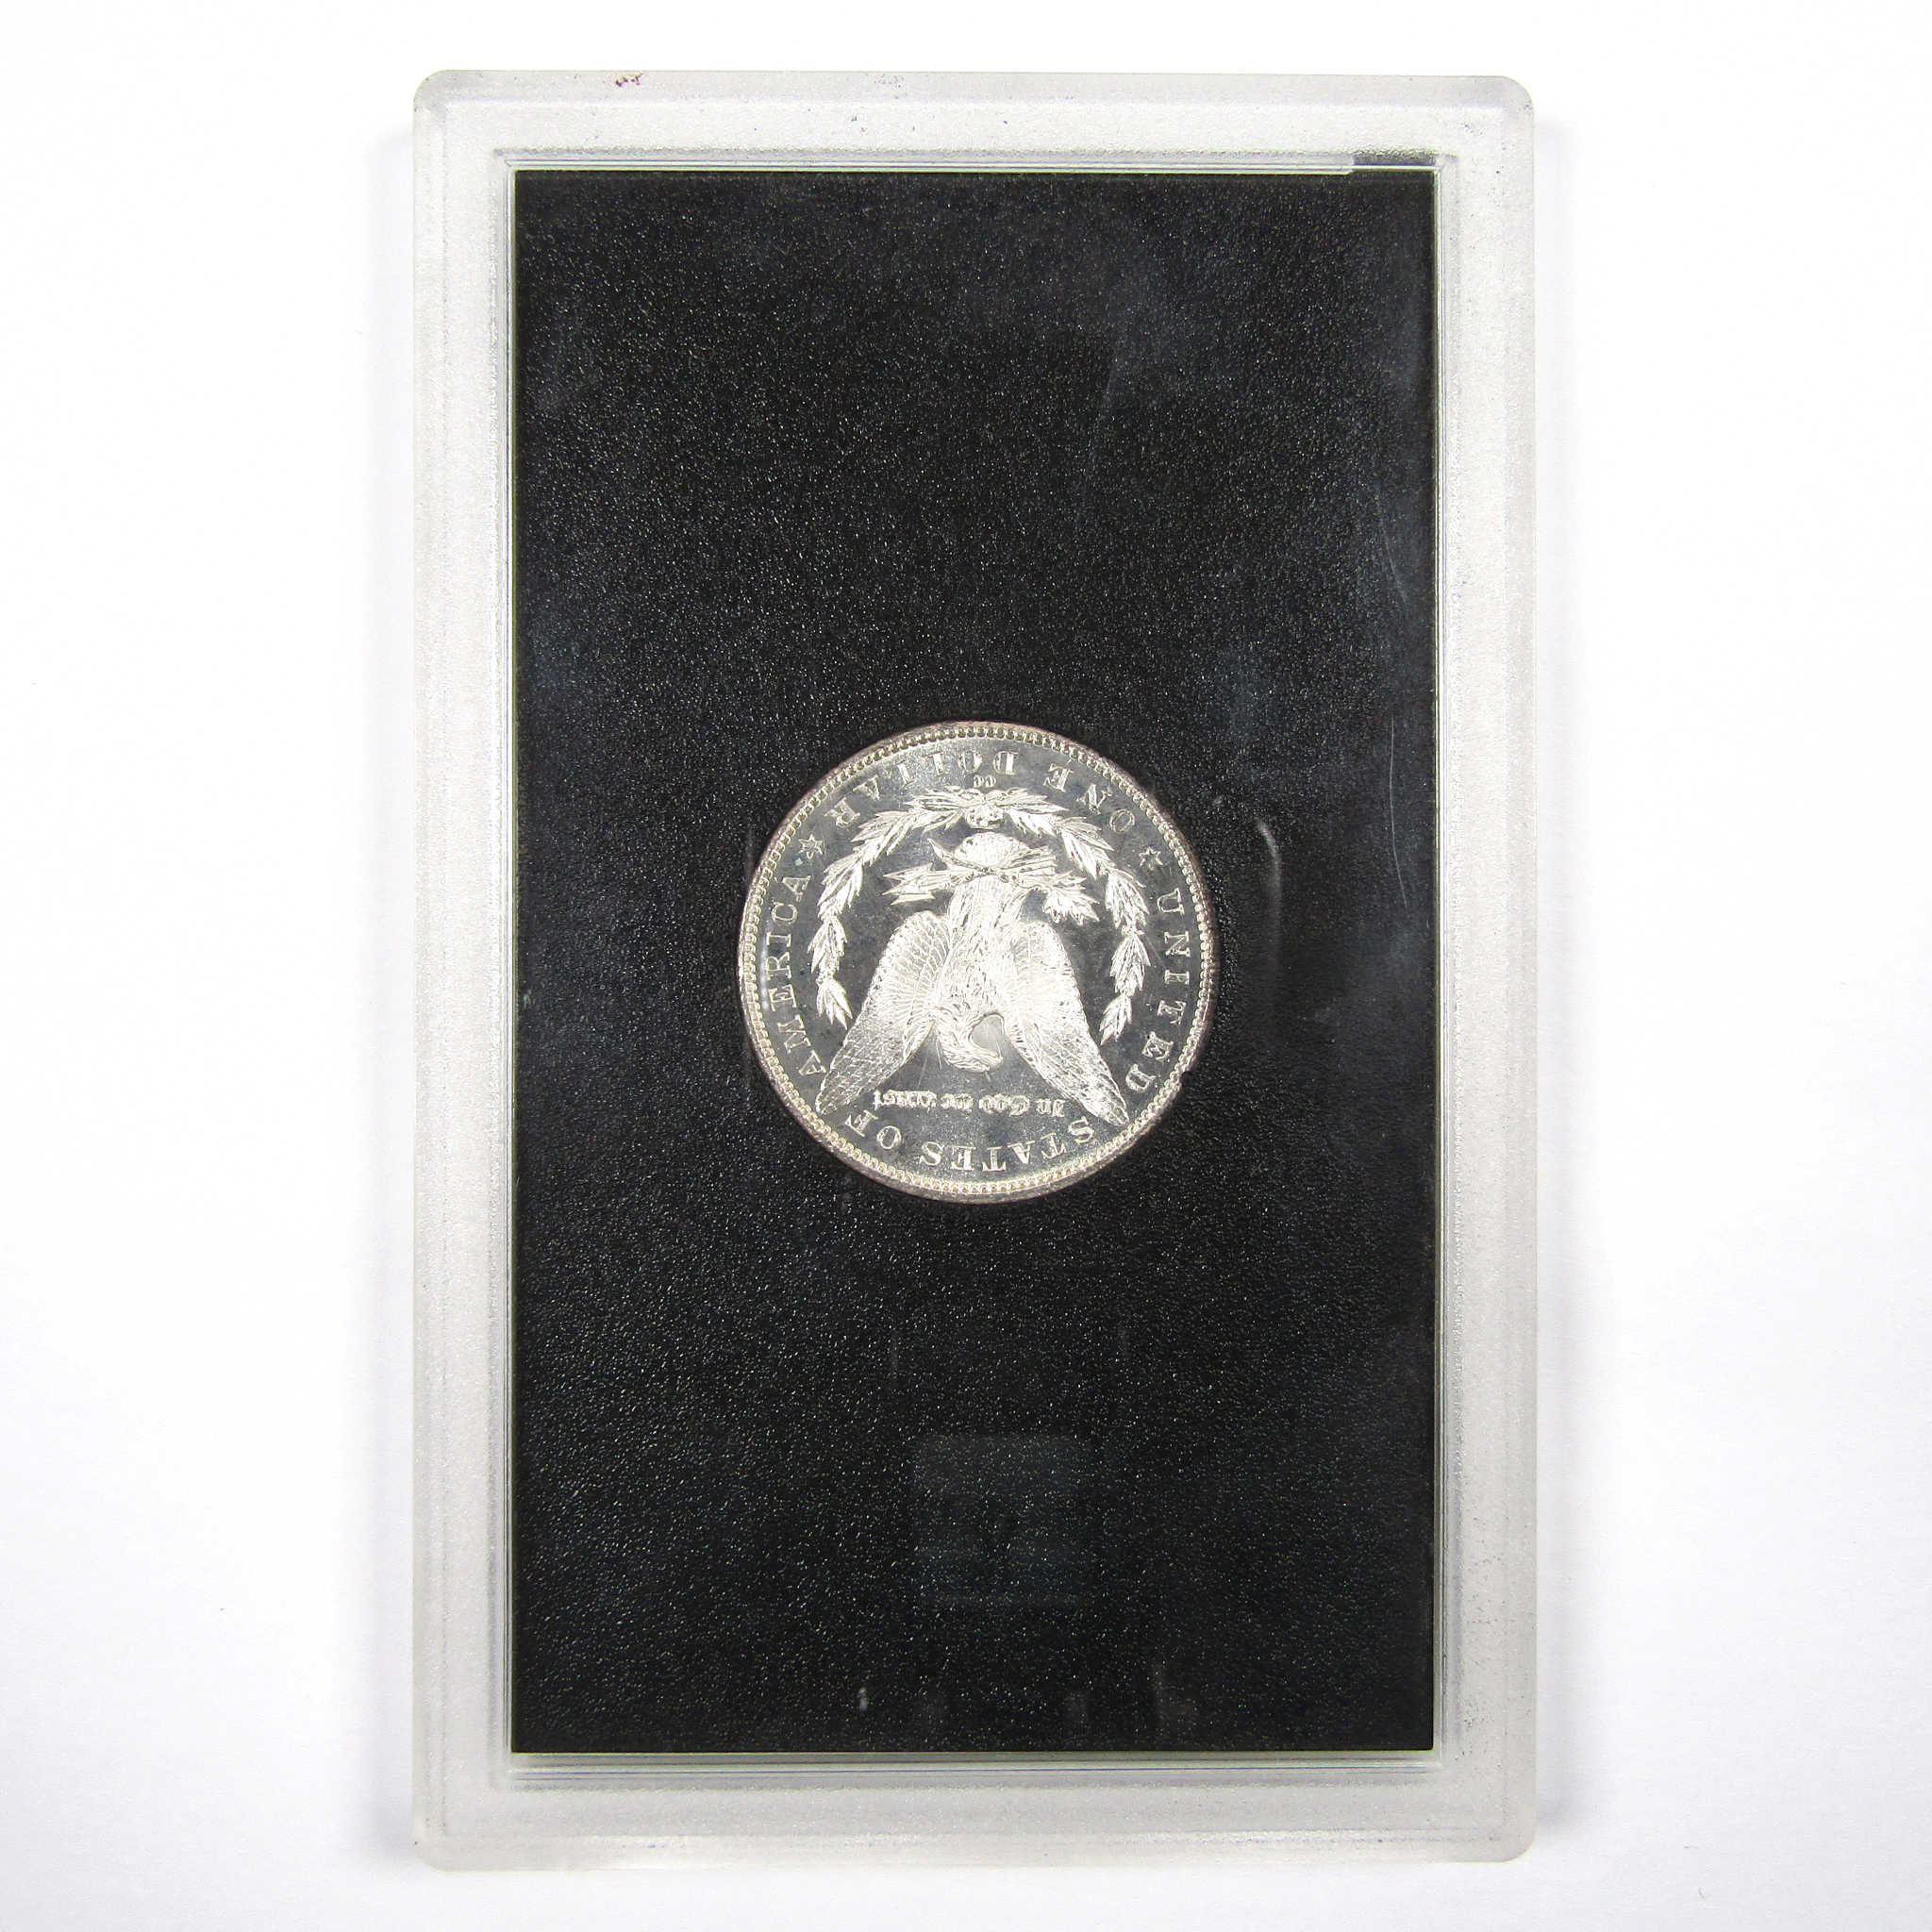 1884 CC GSA Morgan Dollar BU Uncirculated Silver $1 Coin SKU:I9298 - Morgan coin - Morgan silver dollar - Morgan silver dollar for sale - Profile Coins &amp; Collectibles